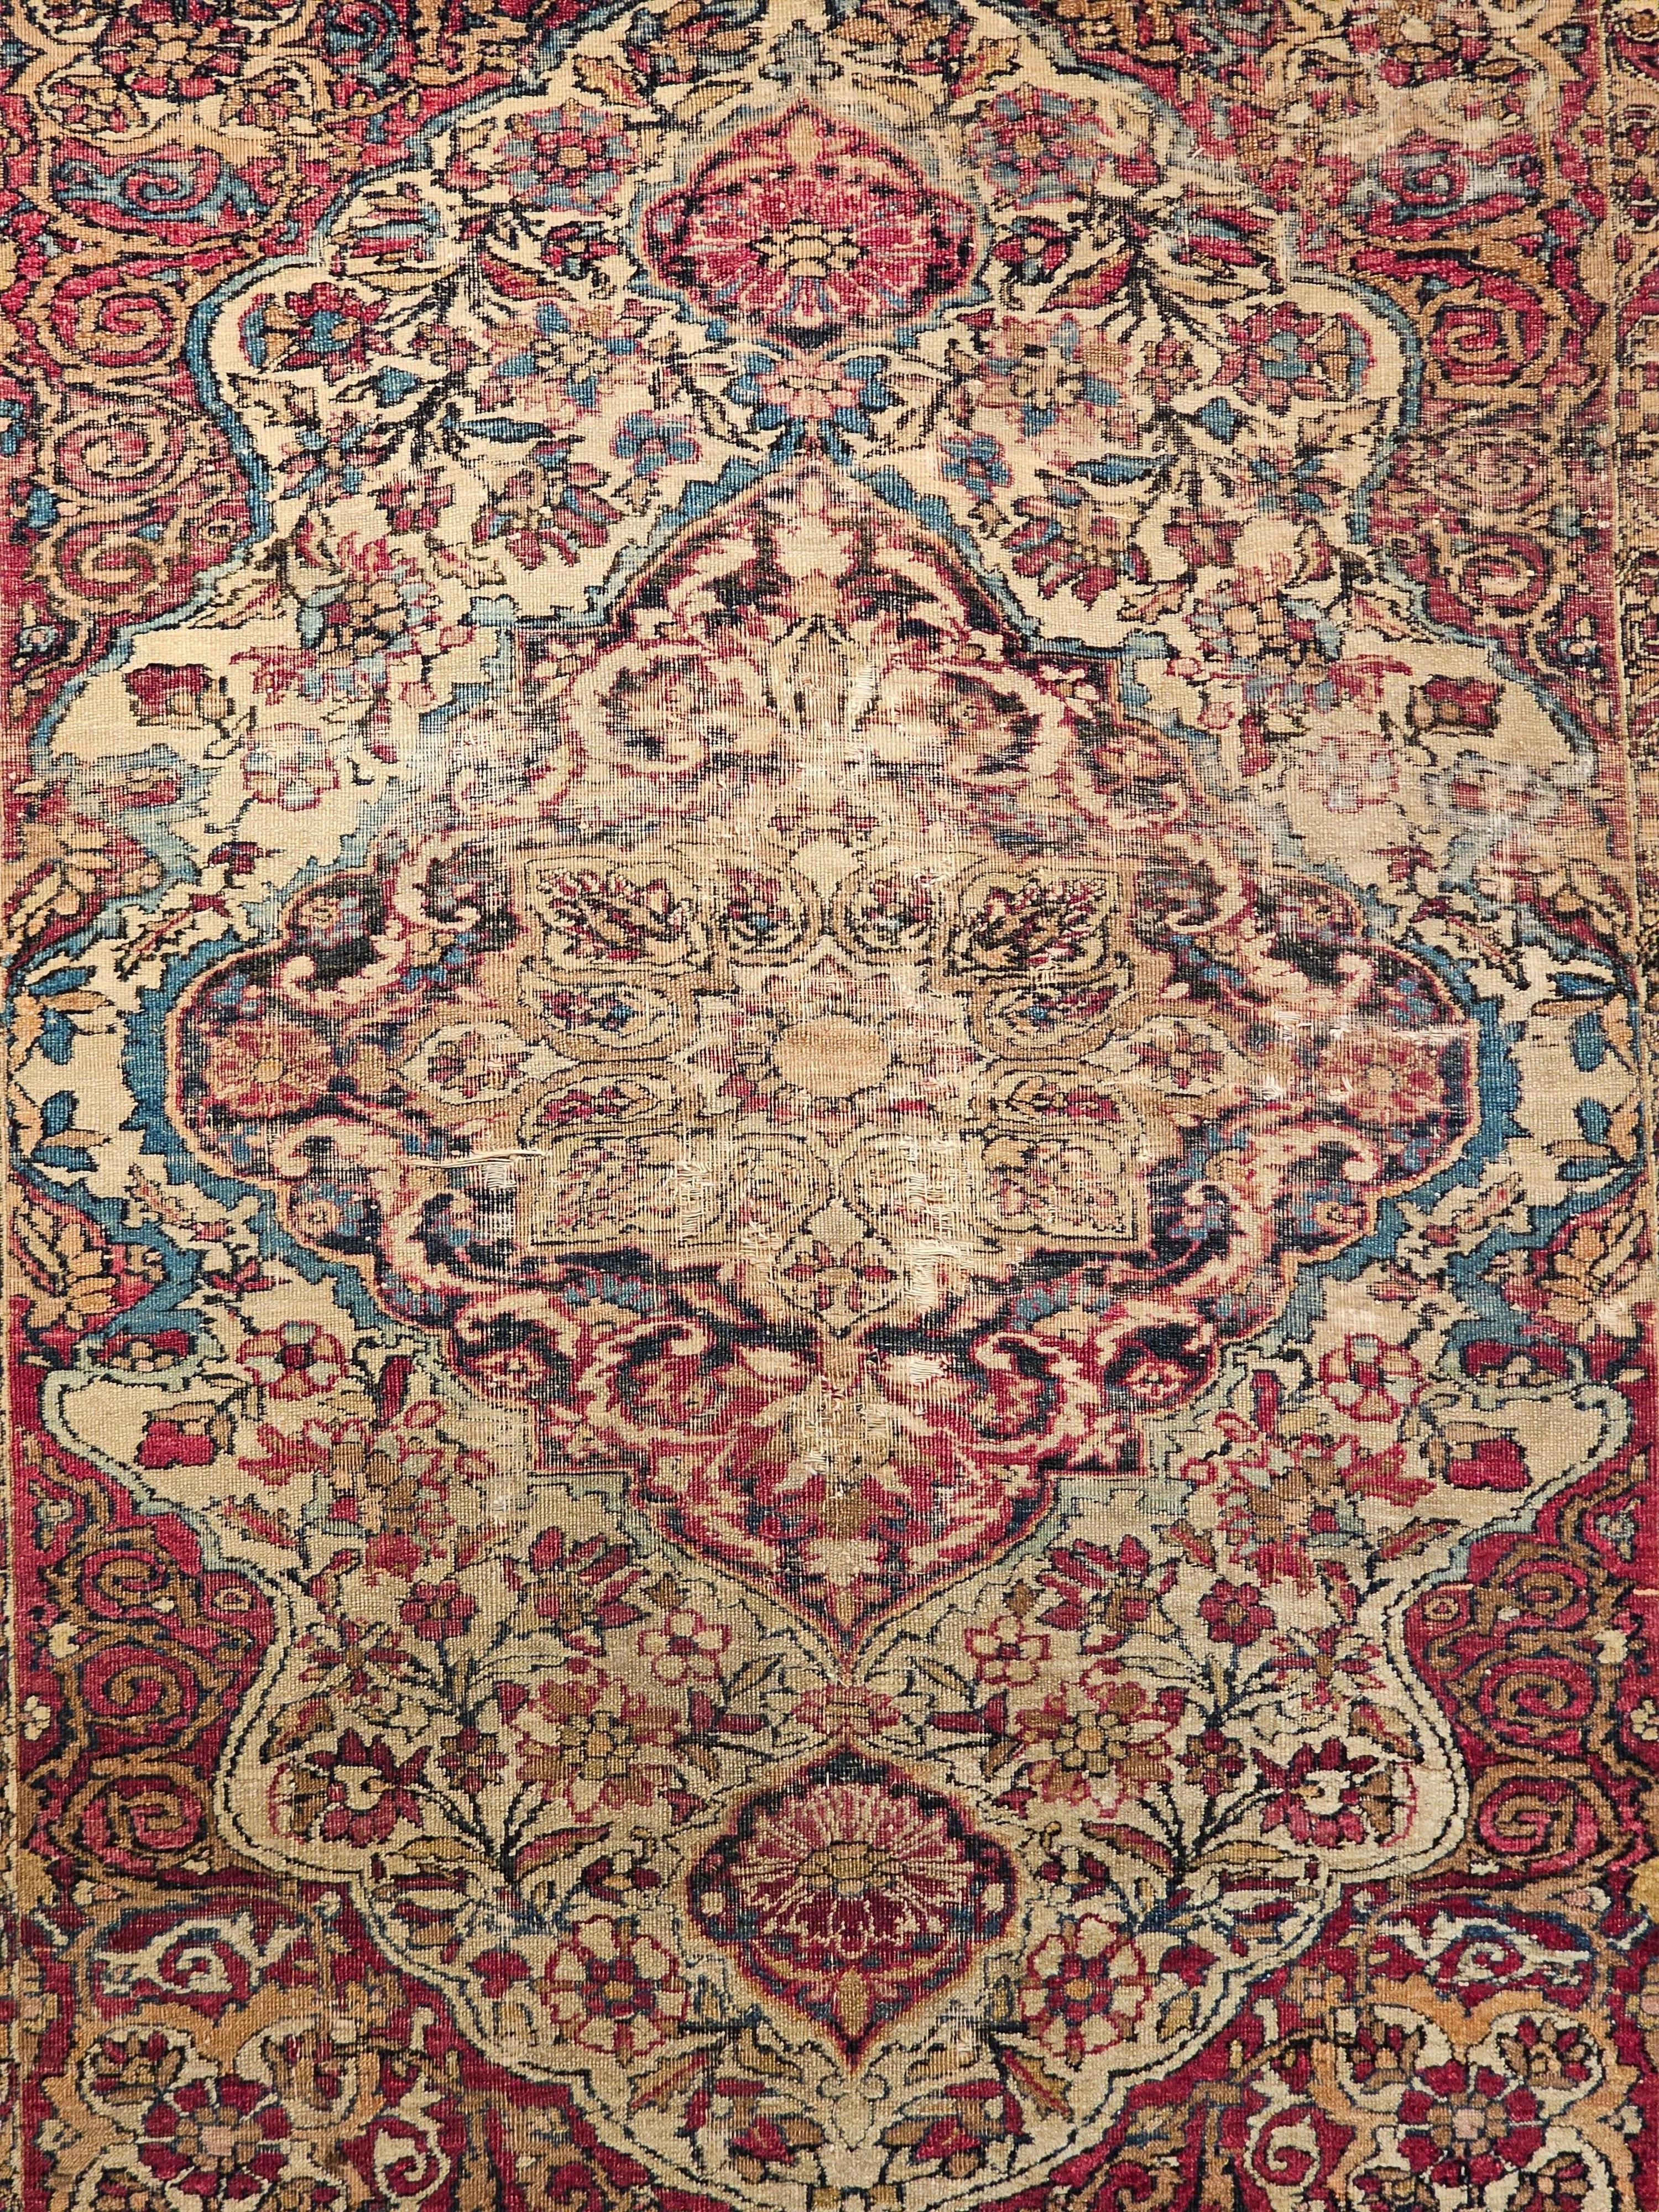 Persischer Kerman Lavar-Teppich aus der Mitte des 19. Jahrhunderts mit floralem Muster in Elfenbein, Rot und Französisch-Blau.  Der Teppich hat ein wunderschönes Design und eine tolle Farbkombination.  Der Teppich hat ein zentrales Medaillon in